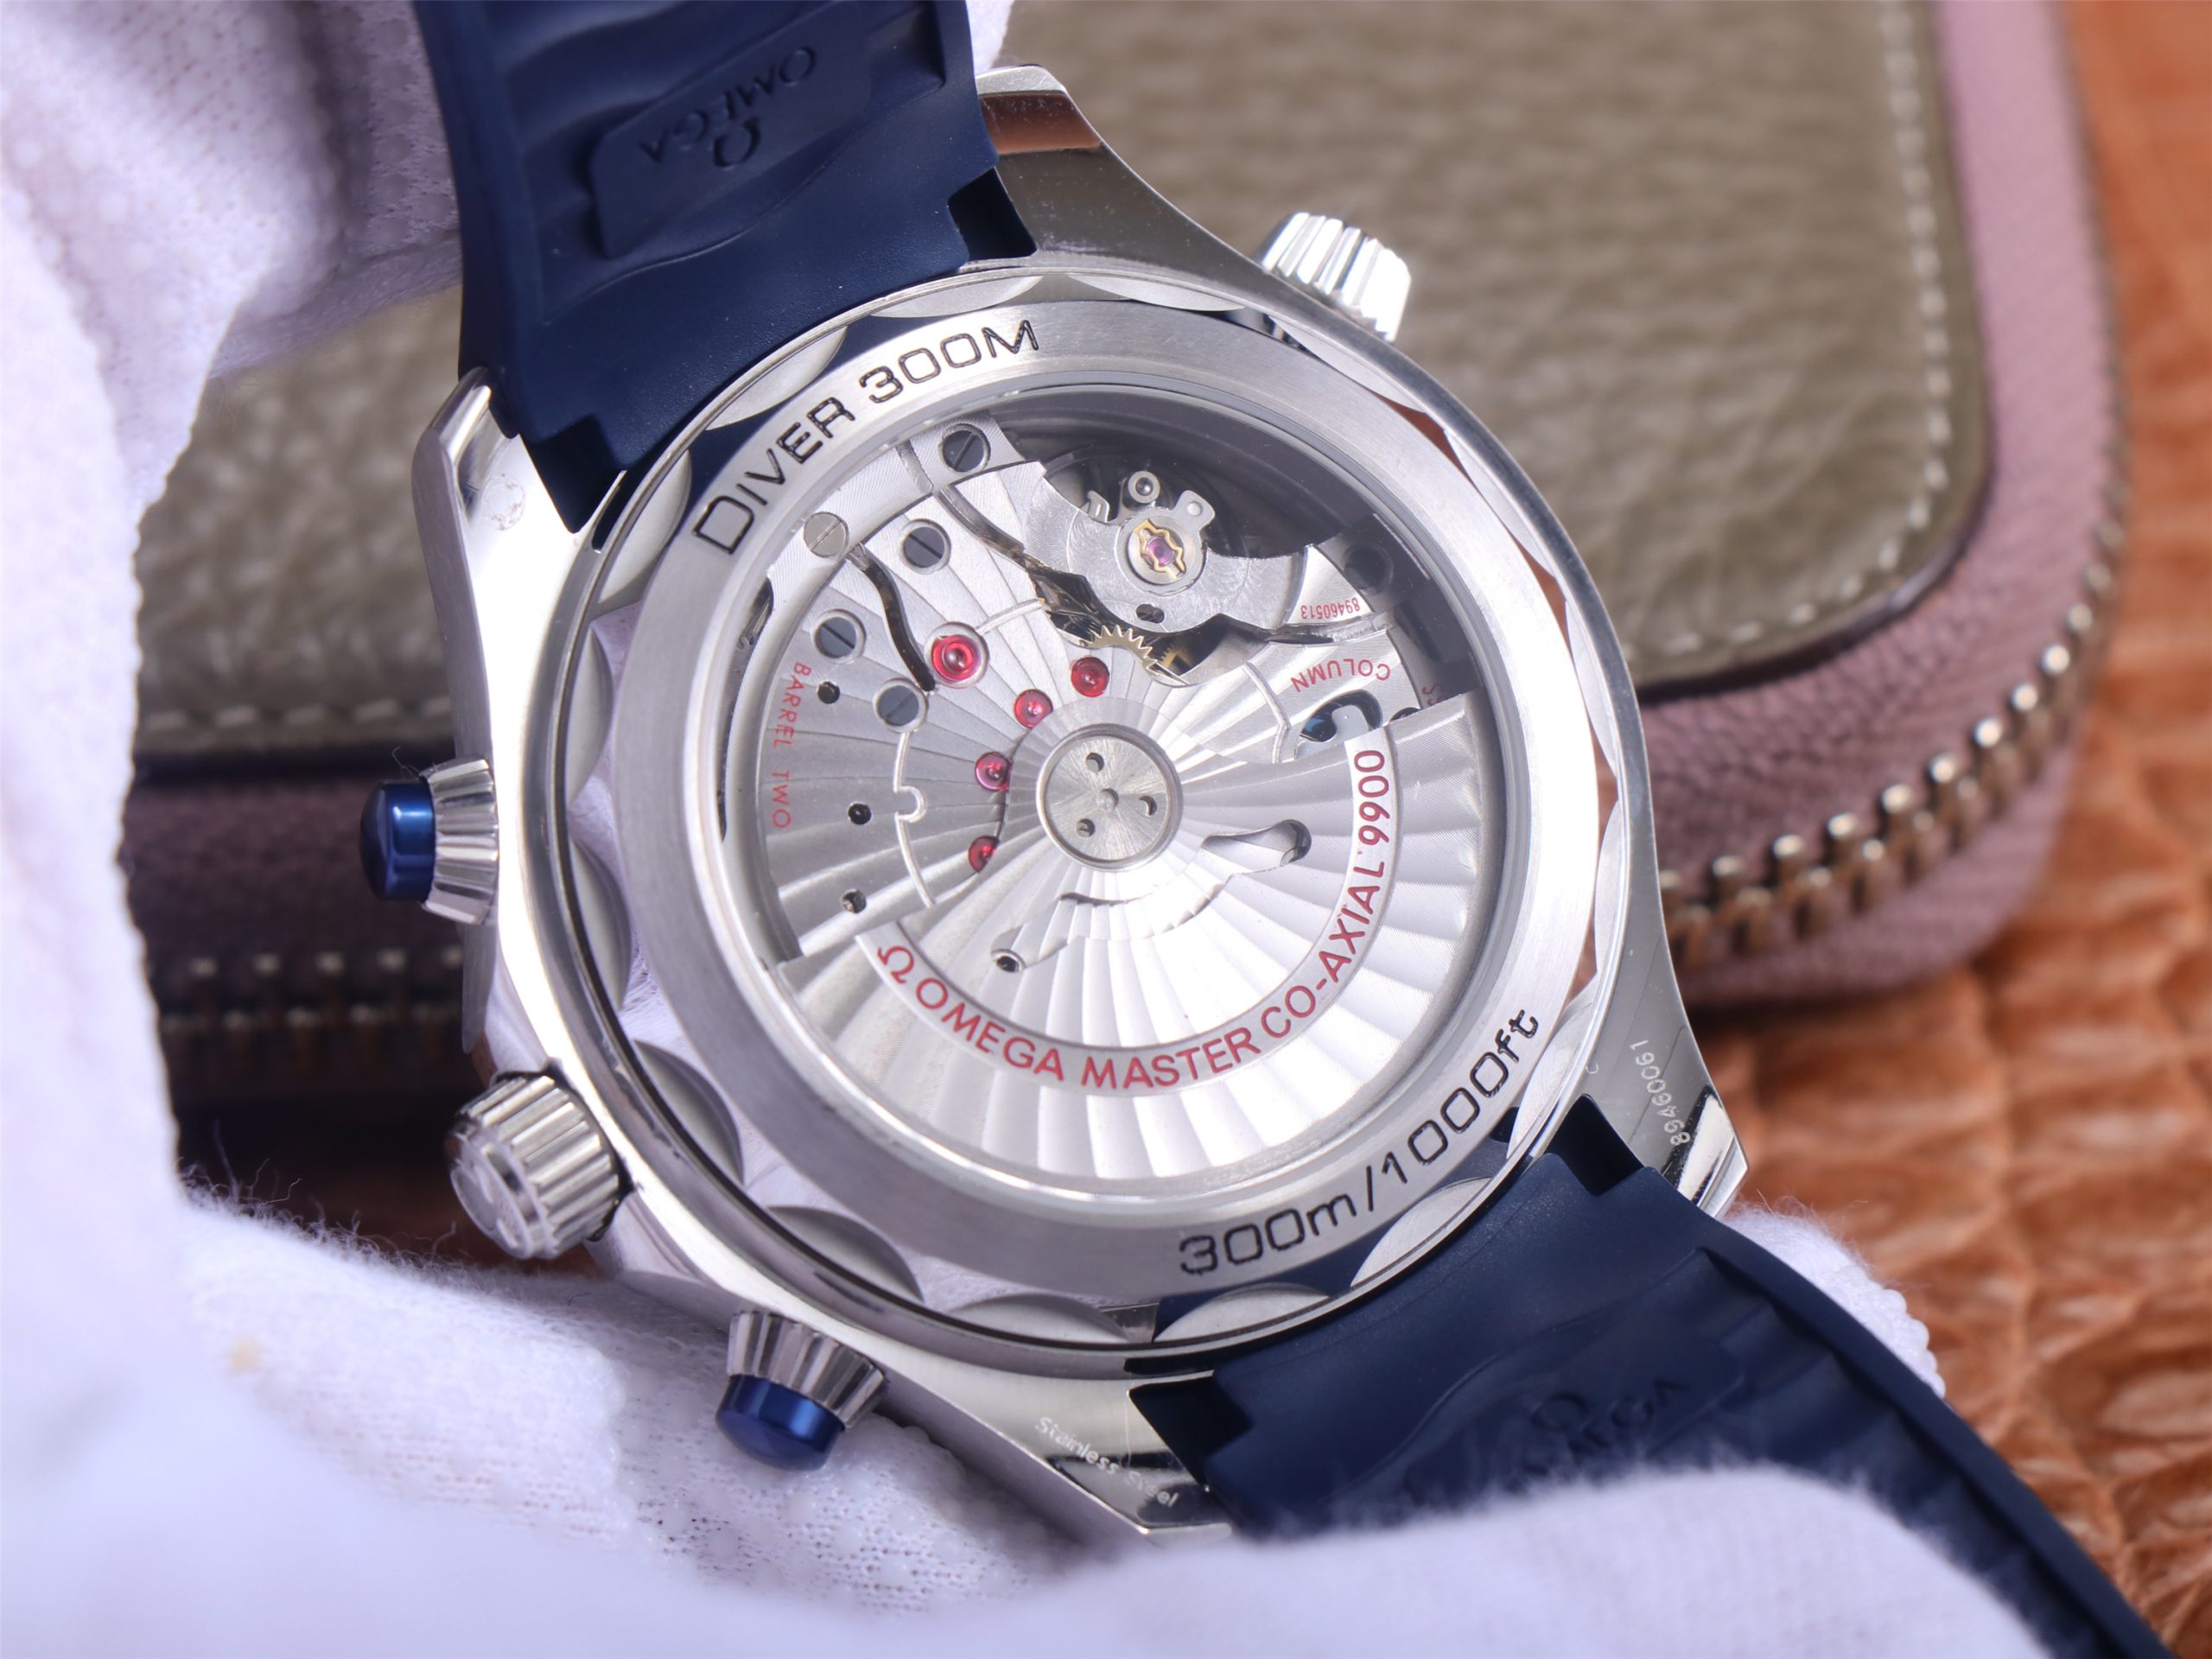 2023042601370128 scaled - um錶廠手錶歐米茄海馬一比一復刻錶 210.30.44.51.03.001￥4680 